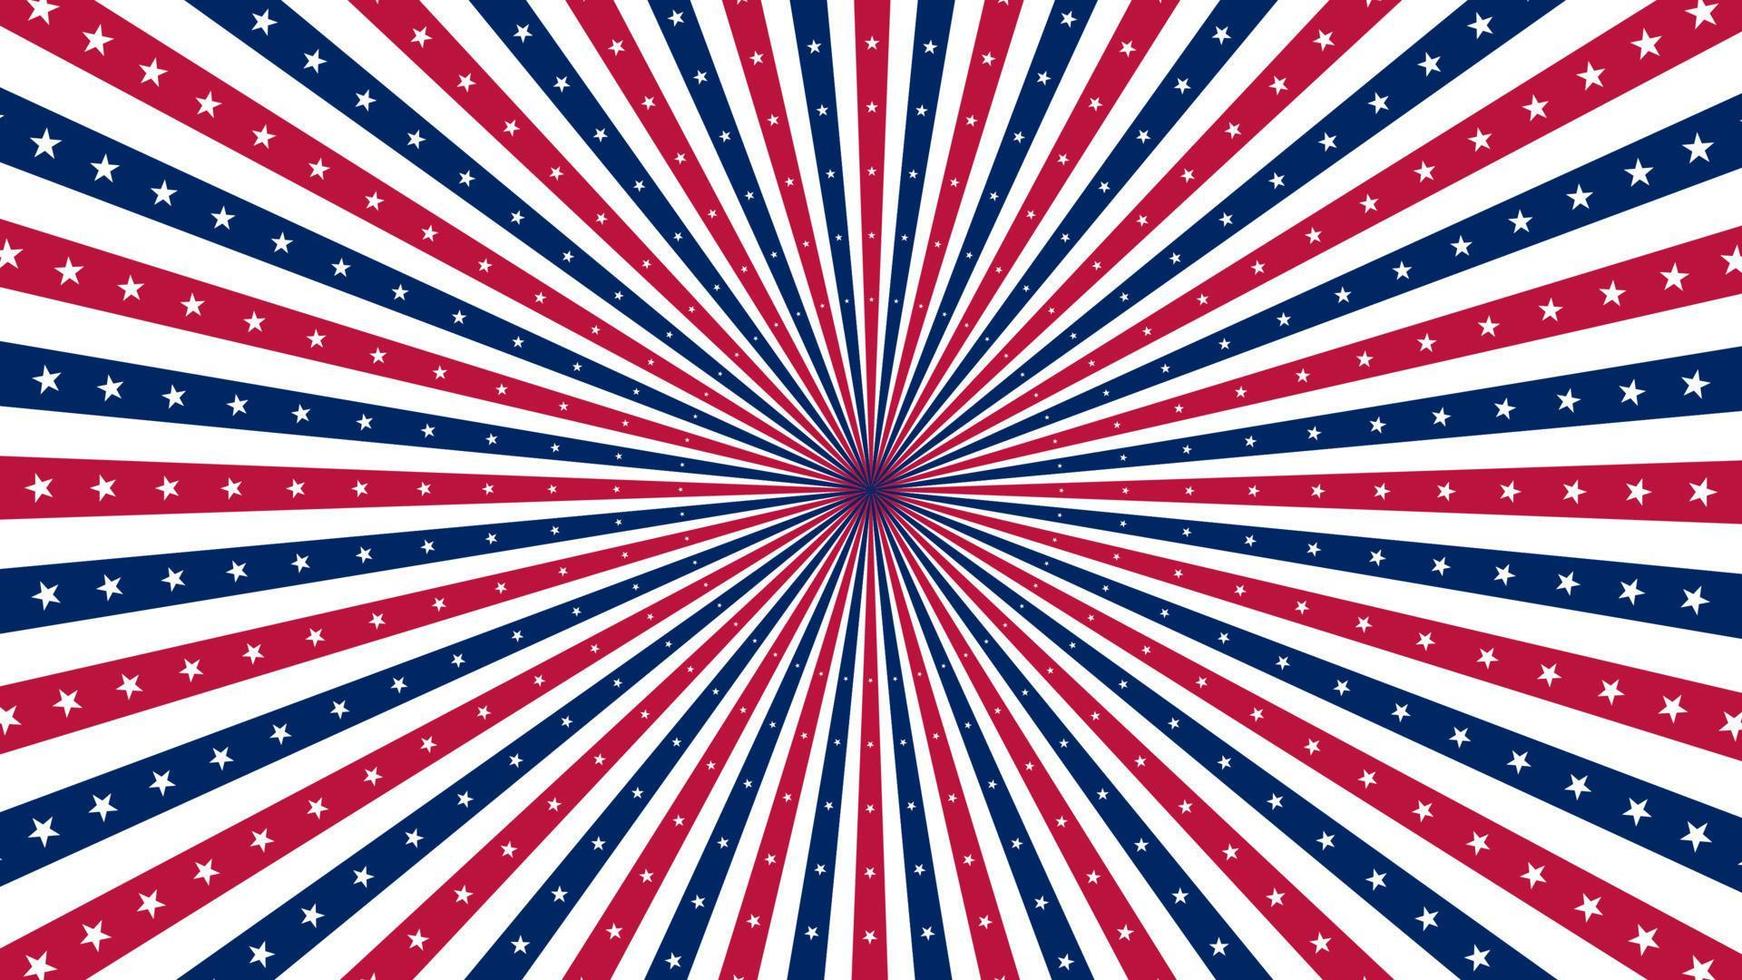 uns Denkmal Tag, USA amerikanisch Land Flagge Hintergrund National Unabhängigkeit Tag 4 .. von Juli Feuerwerk vektor